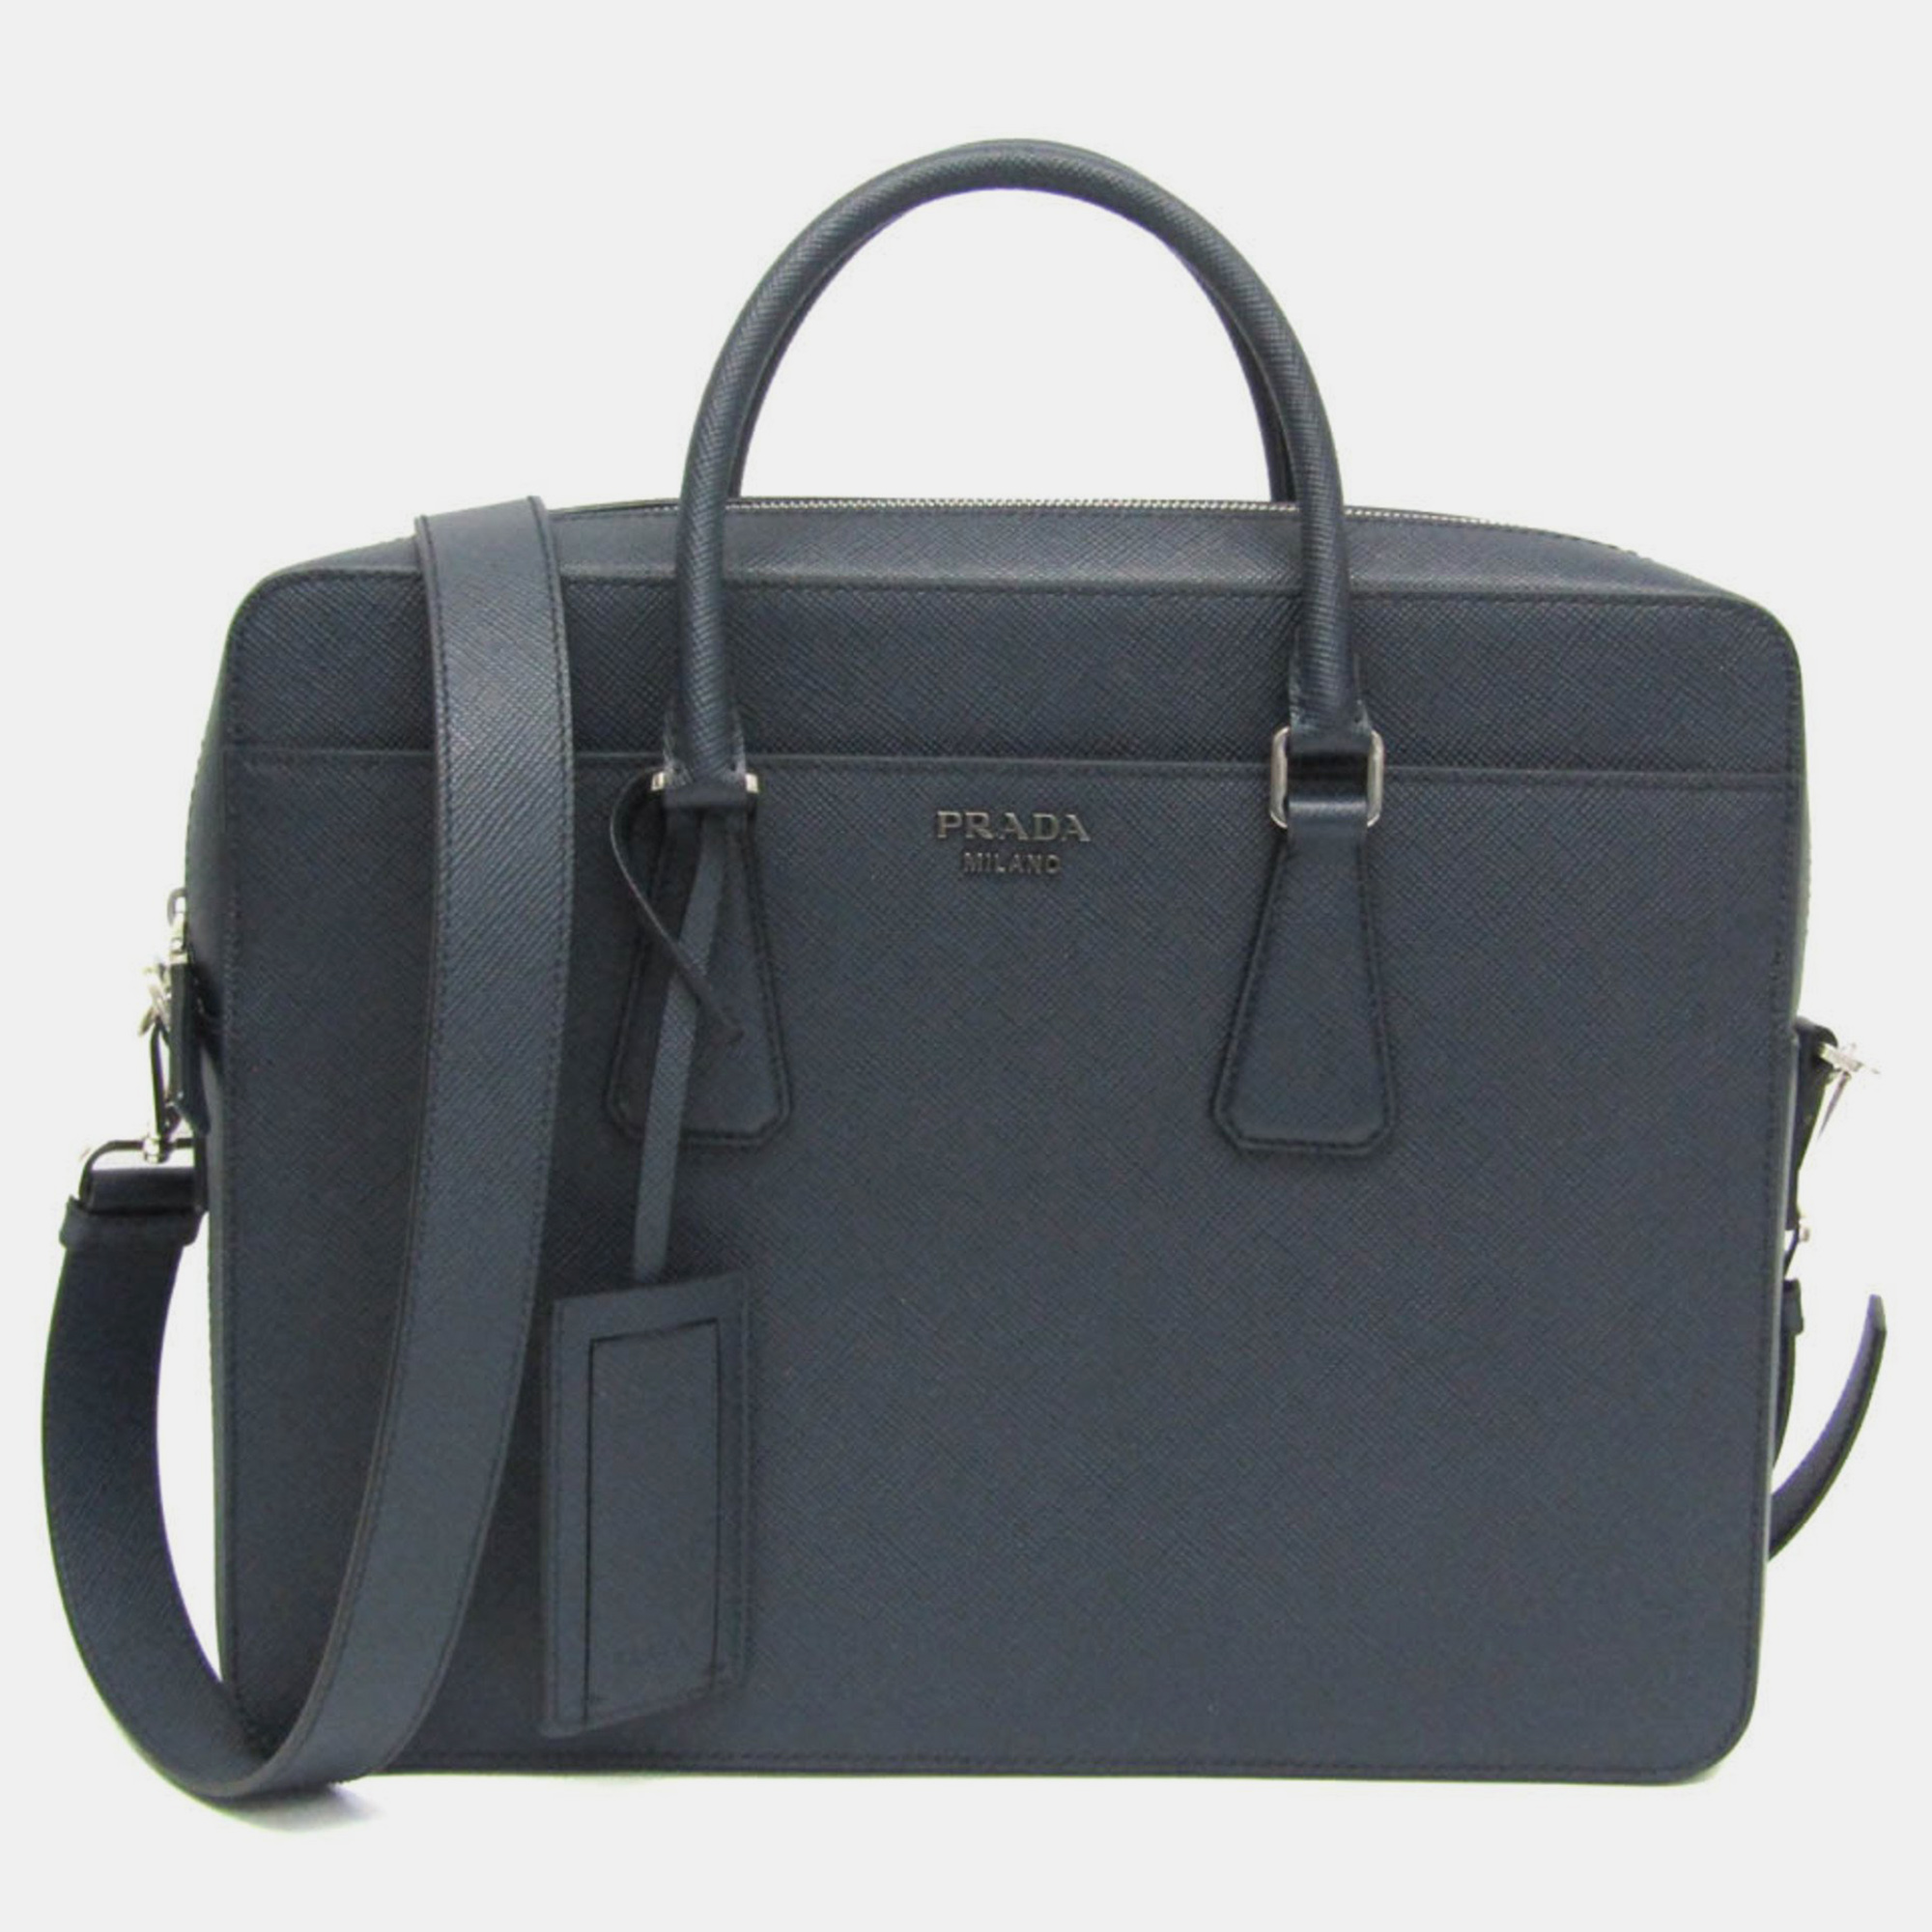 

Prada Blue Saffiano leather Briefcase